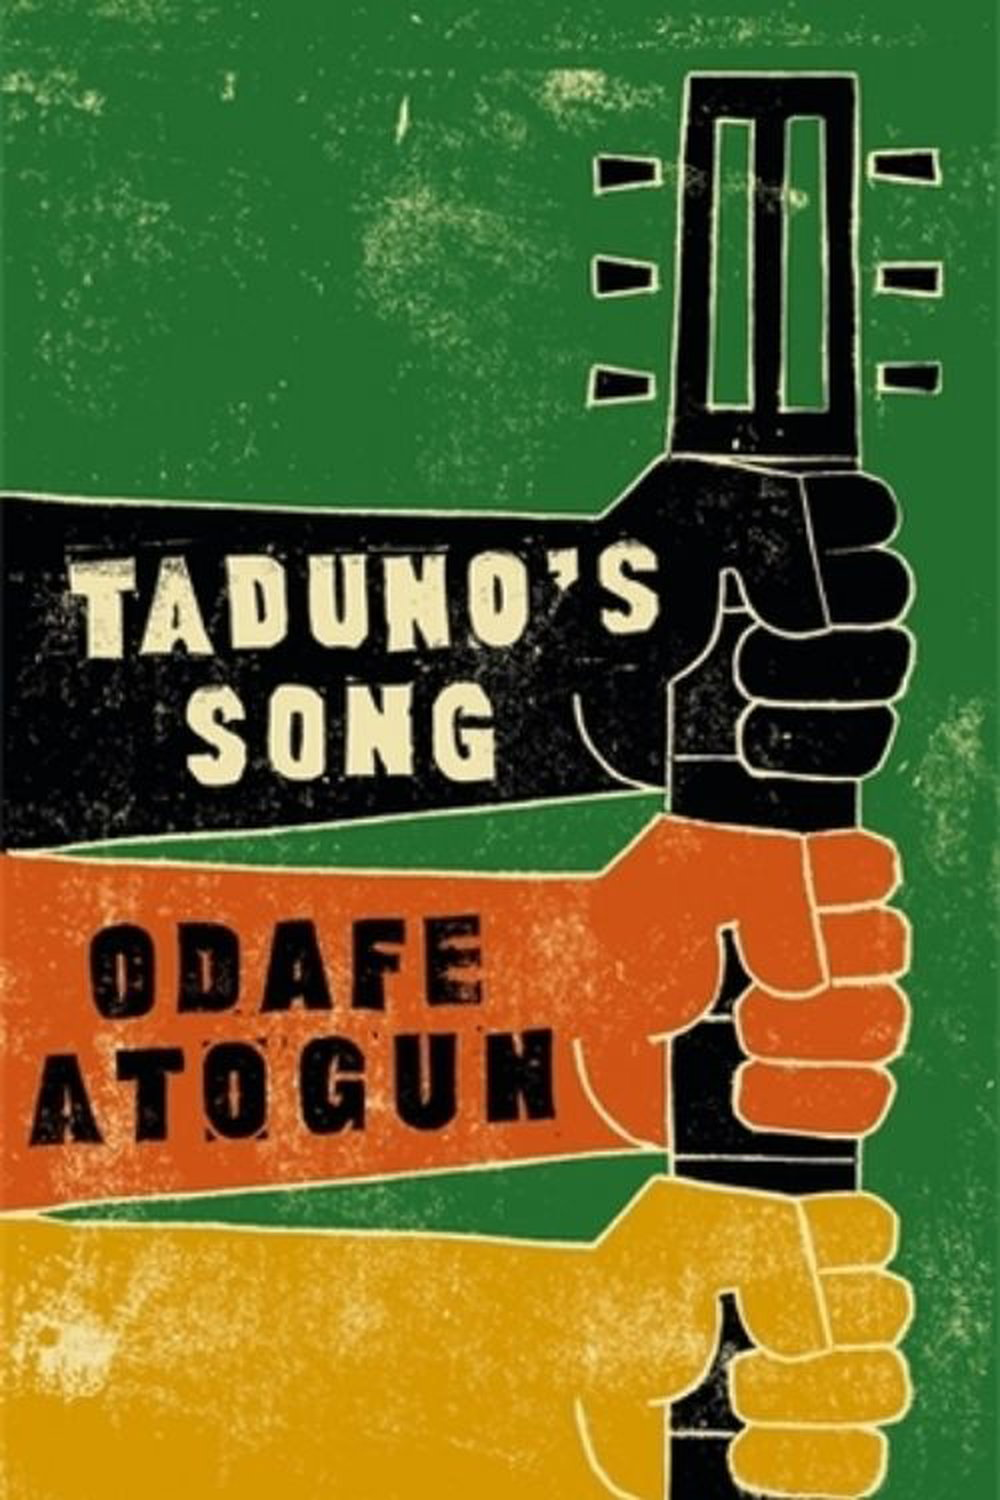 7 libros inspirados en la mitología africana (Canción de Taduno)